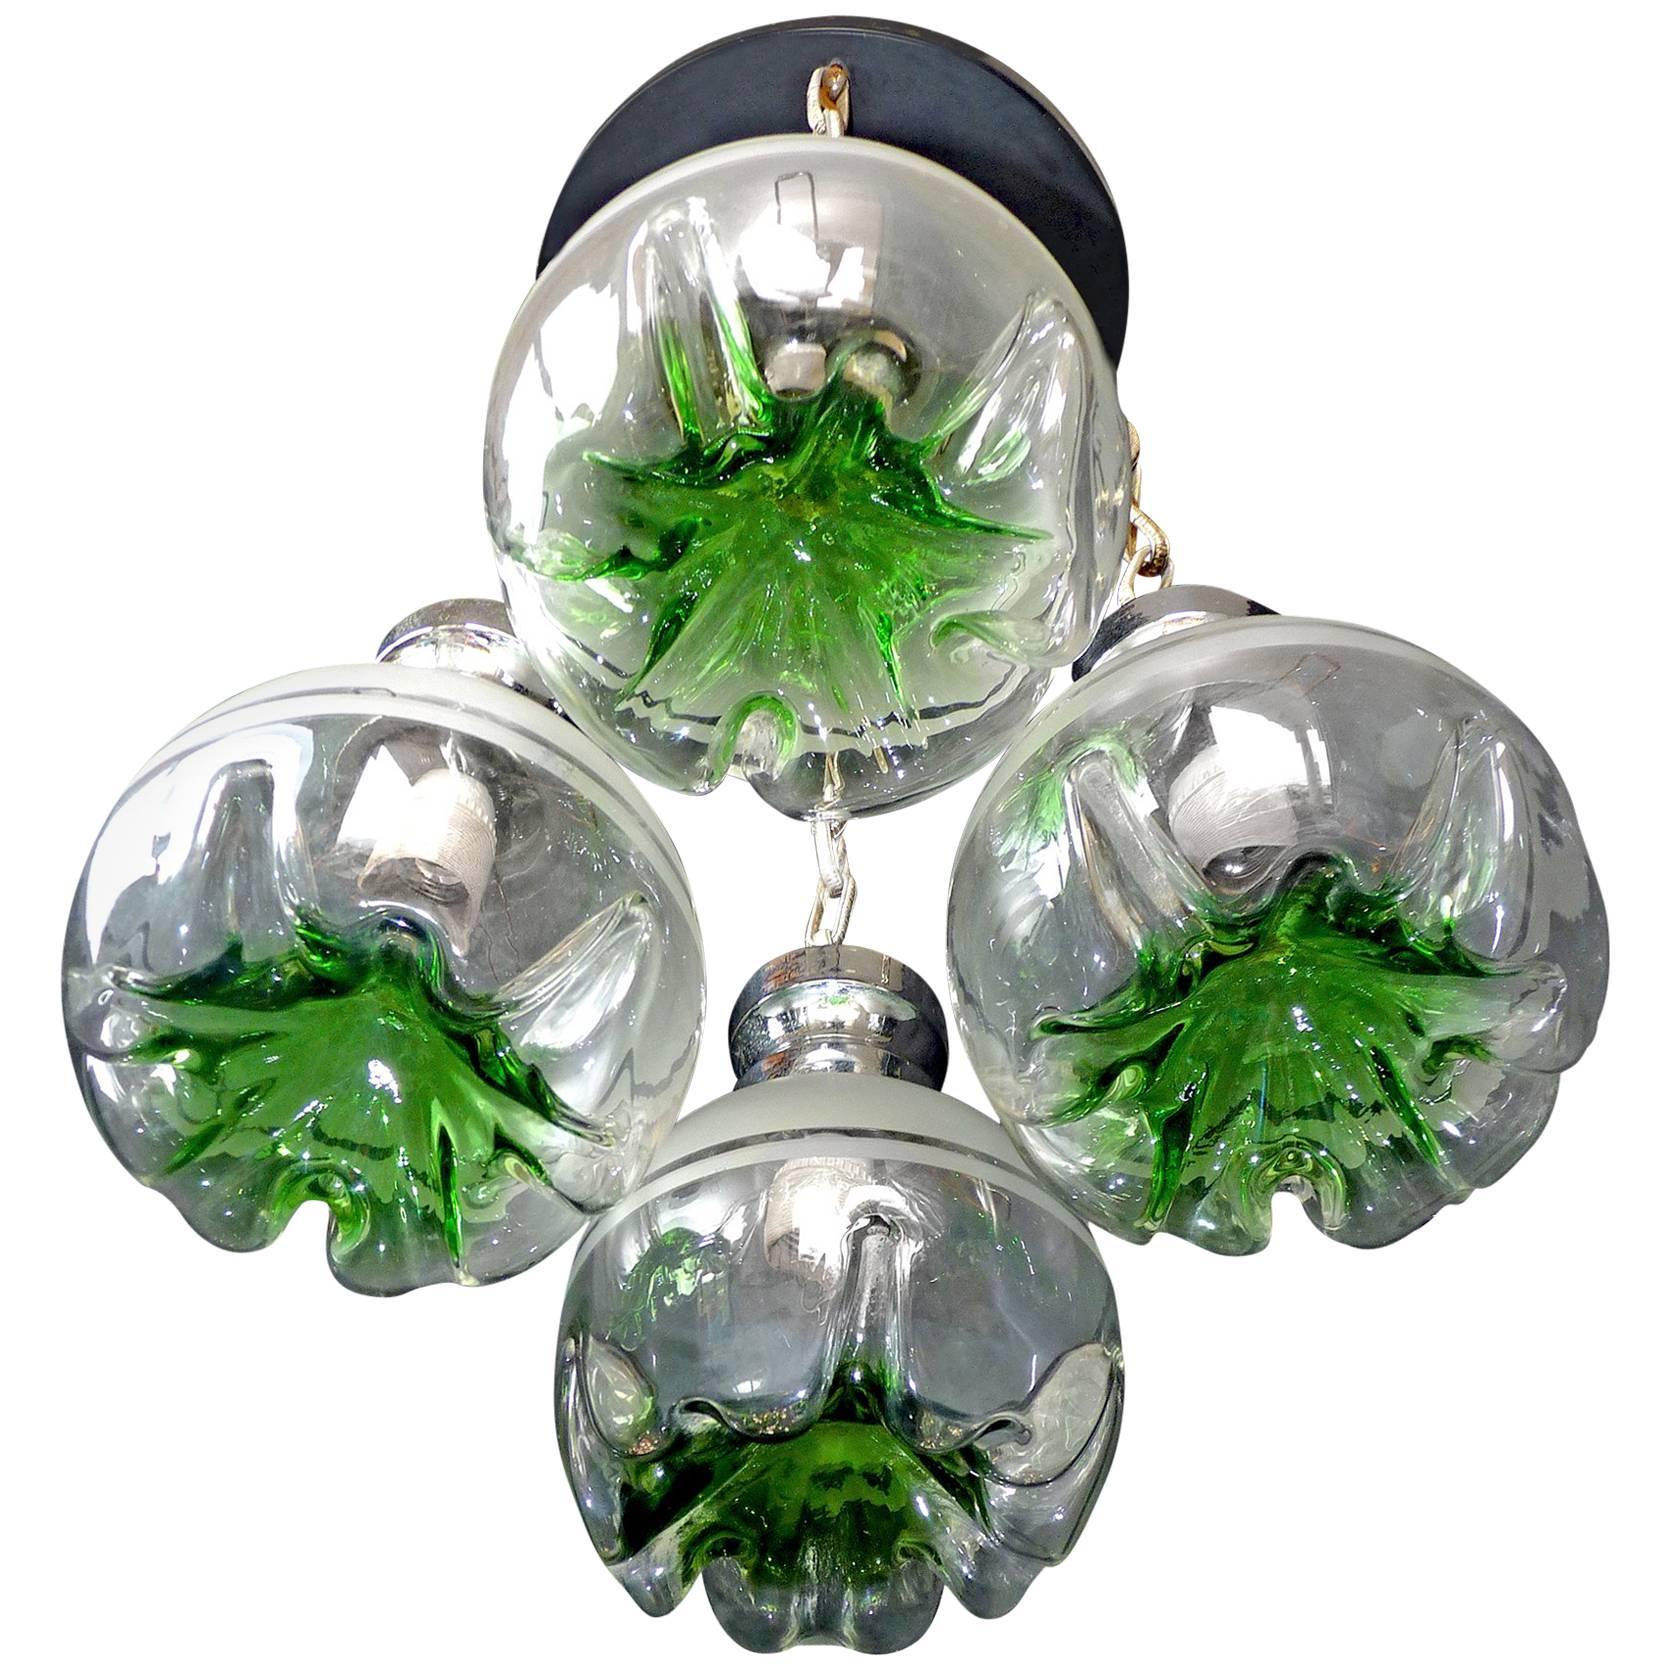 Unusual vintage 1960s Italian modernist Murano Mazzega era art glass chrome Cascade chandelier or glass pendant
Measures: Globe/diameter 8 in. (20 cm).

Measures:
Diameter 20 in / 50 cm
Height 32 in / 80 cm
Weight 22 lb/ 10 Kg
Four light bulbs E14/